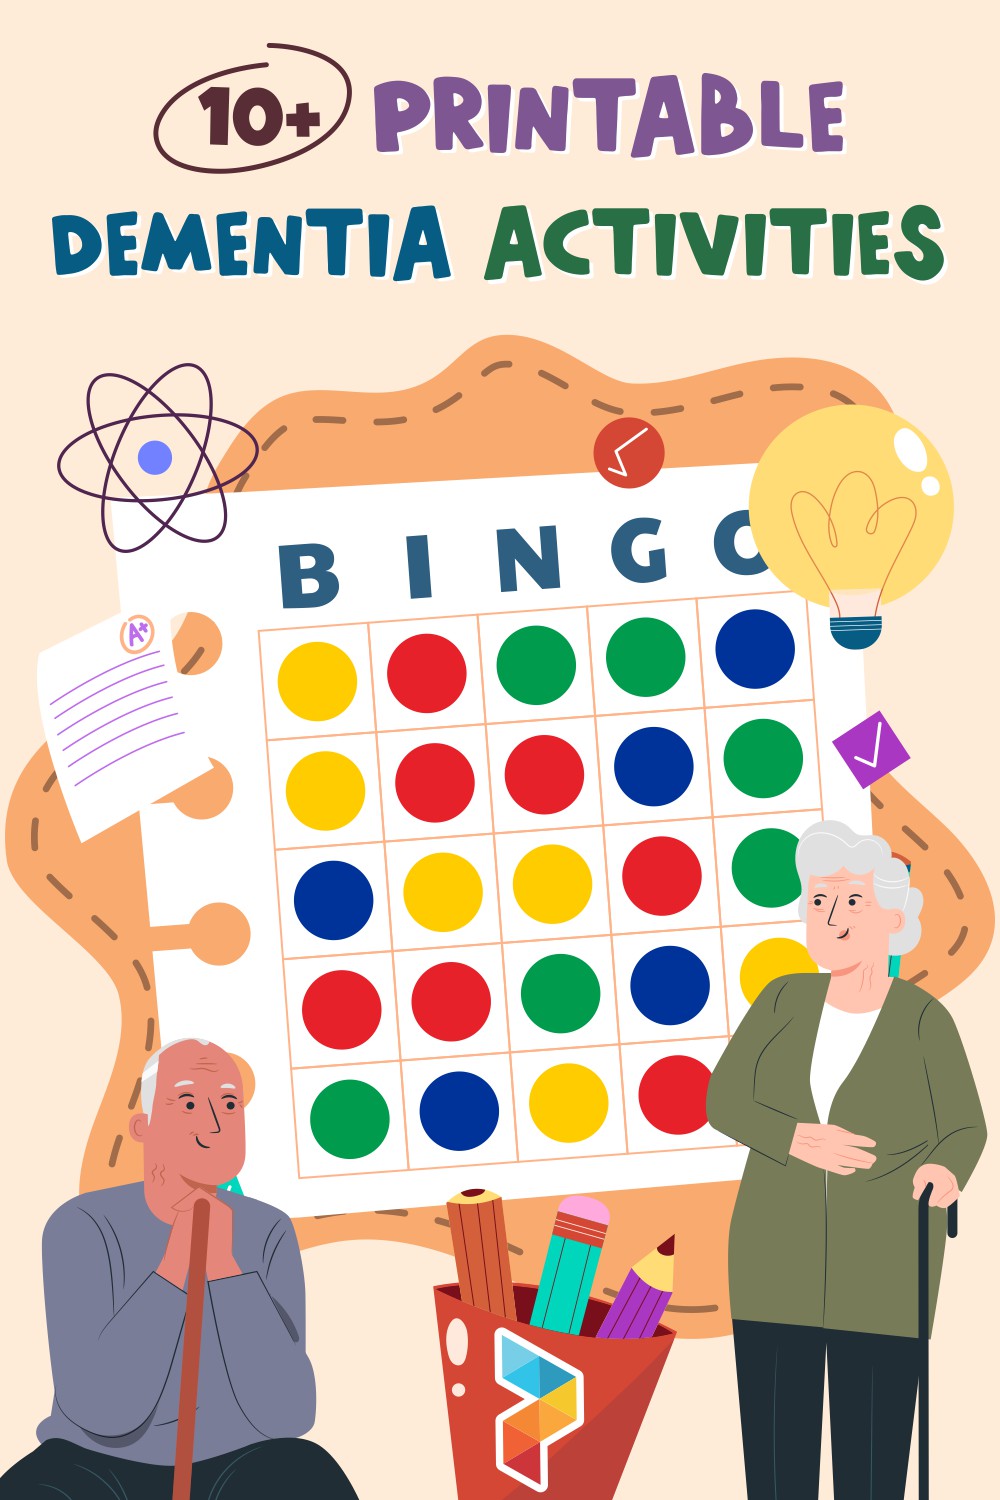 Printable Dementia Activities